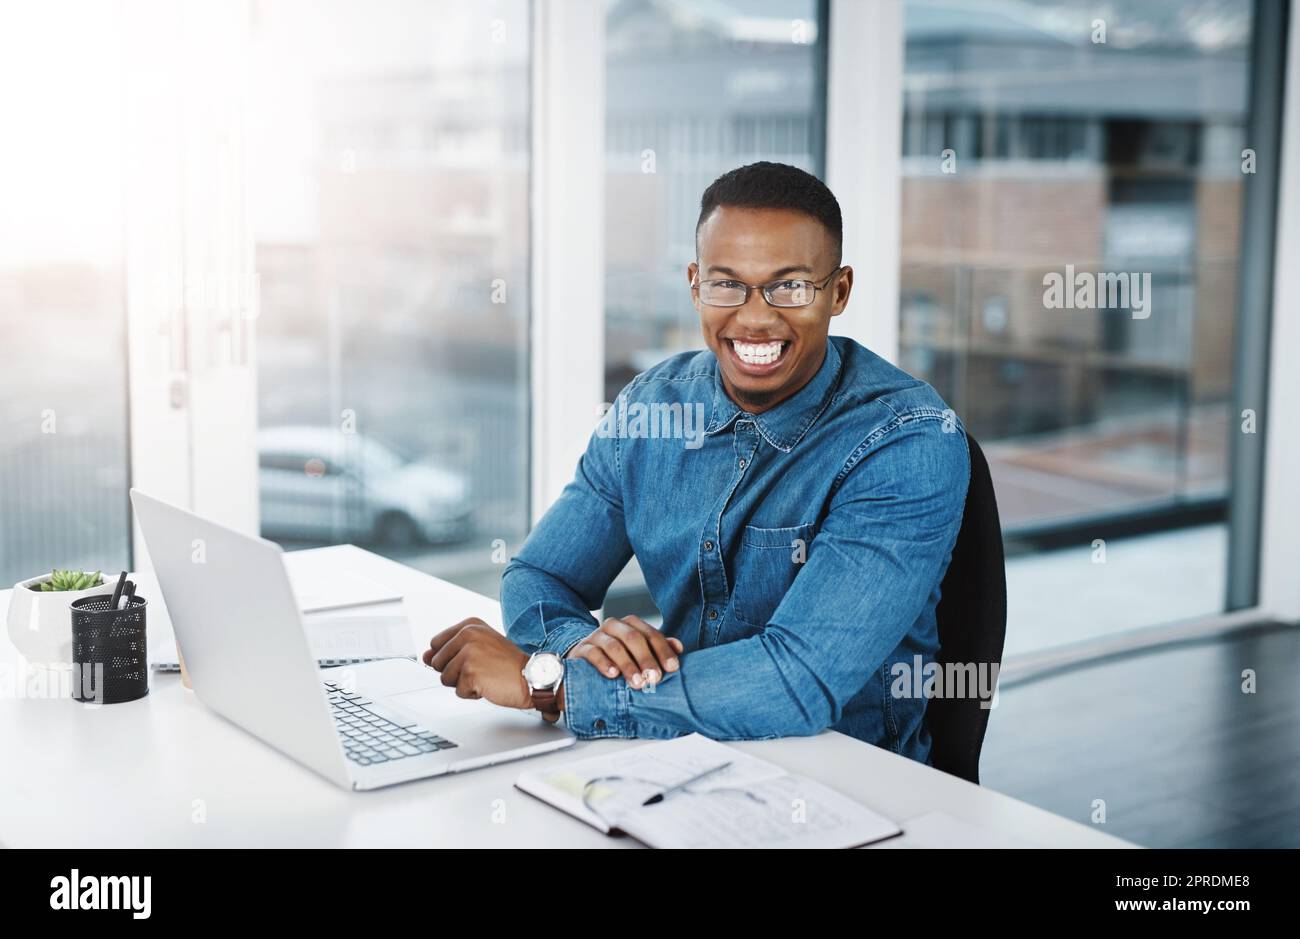 Le seul homme chanceux est celui qui travaille dur. Portrait d'un jeune homme d'affaires travaillant à son bureau dans un bureau moderne. Banque D'Images